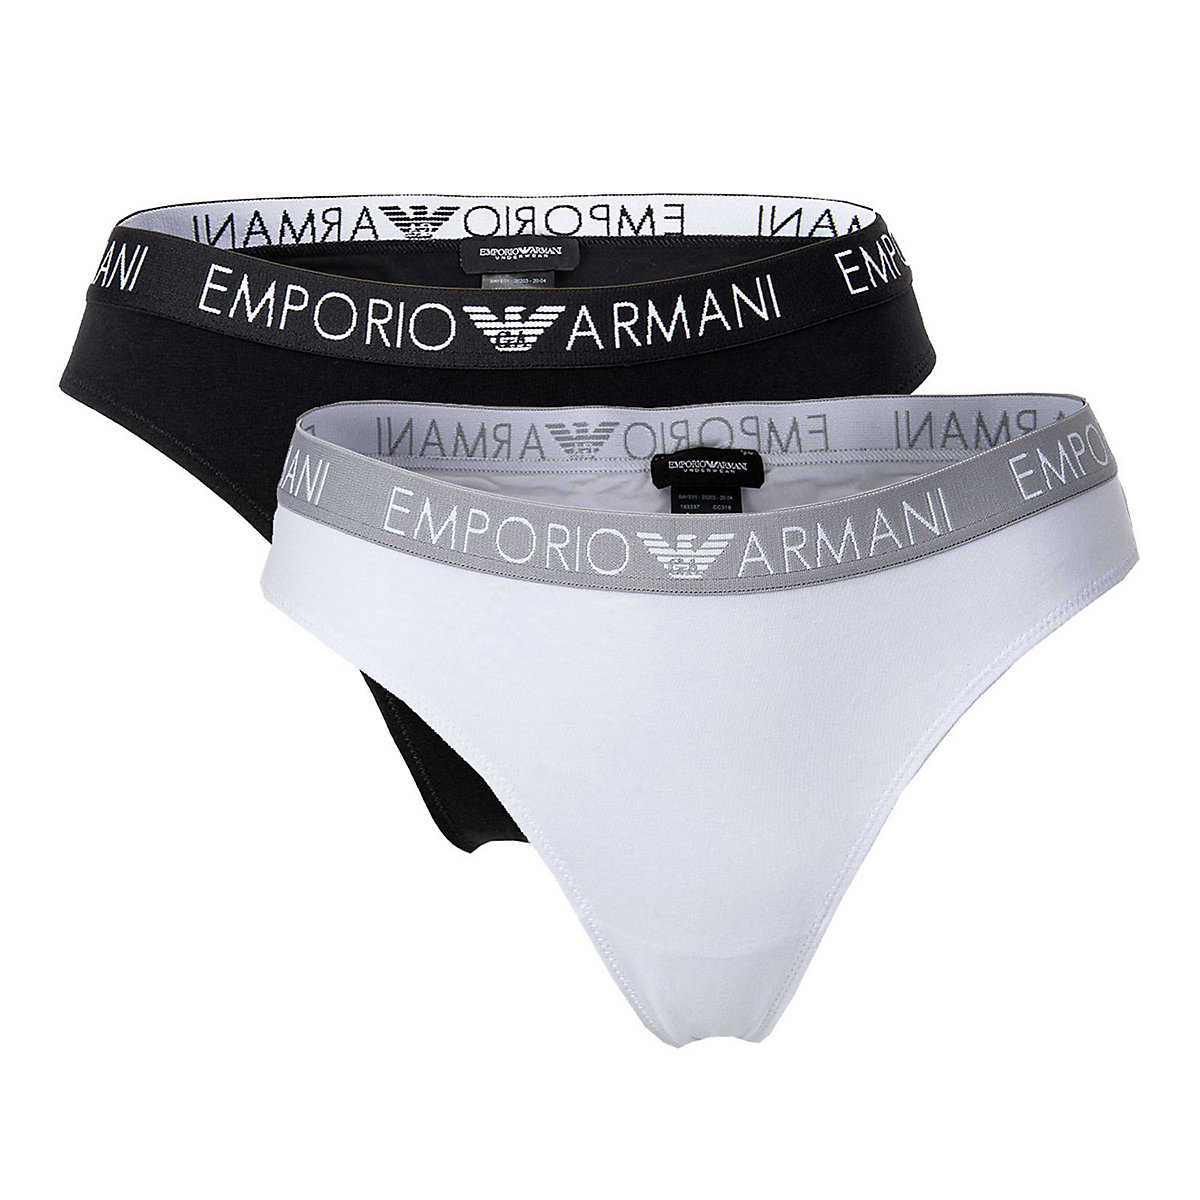 Emporio Armani Damen Thongs 2er Pack Slips Stretch Cotton einfarbig Slips schwarz/weiß